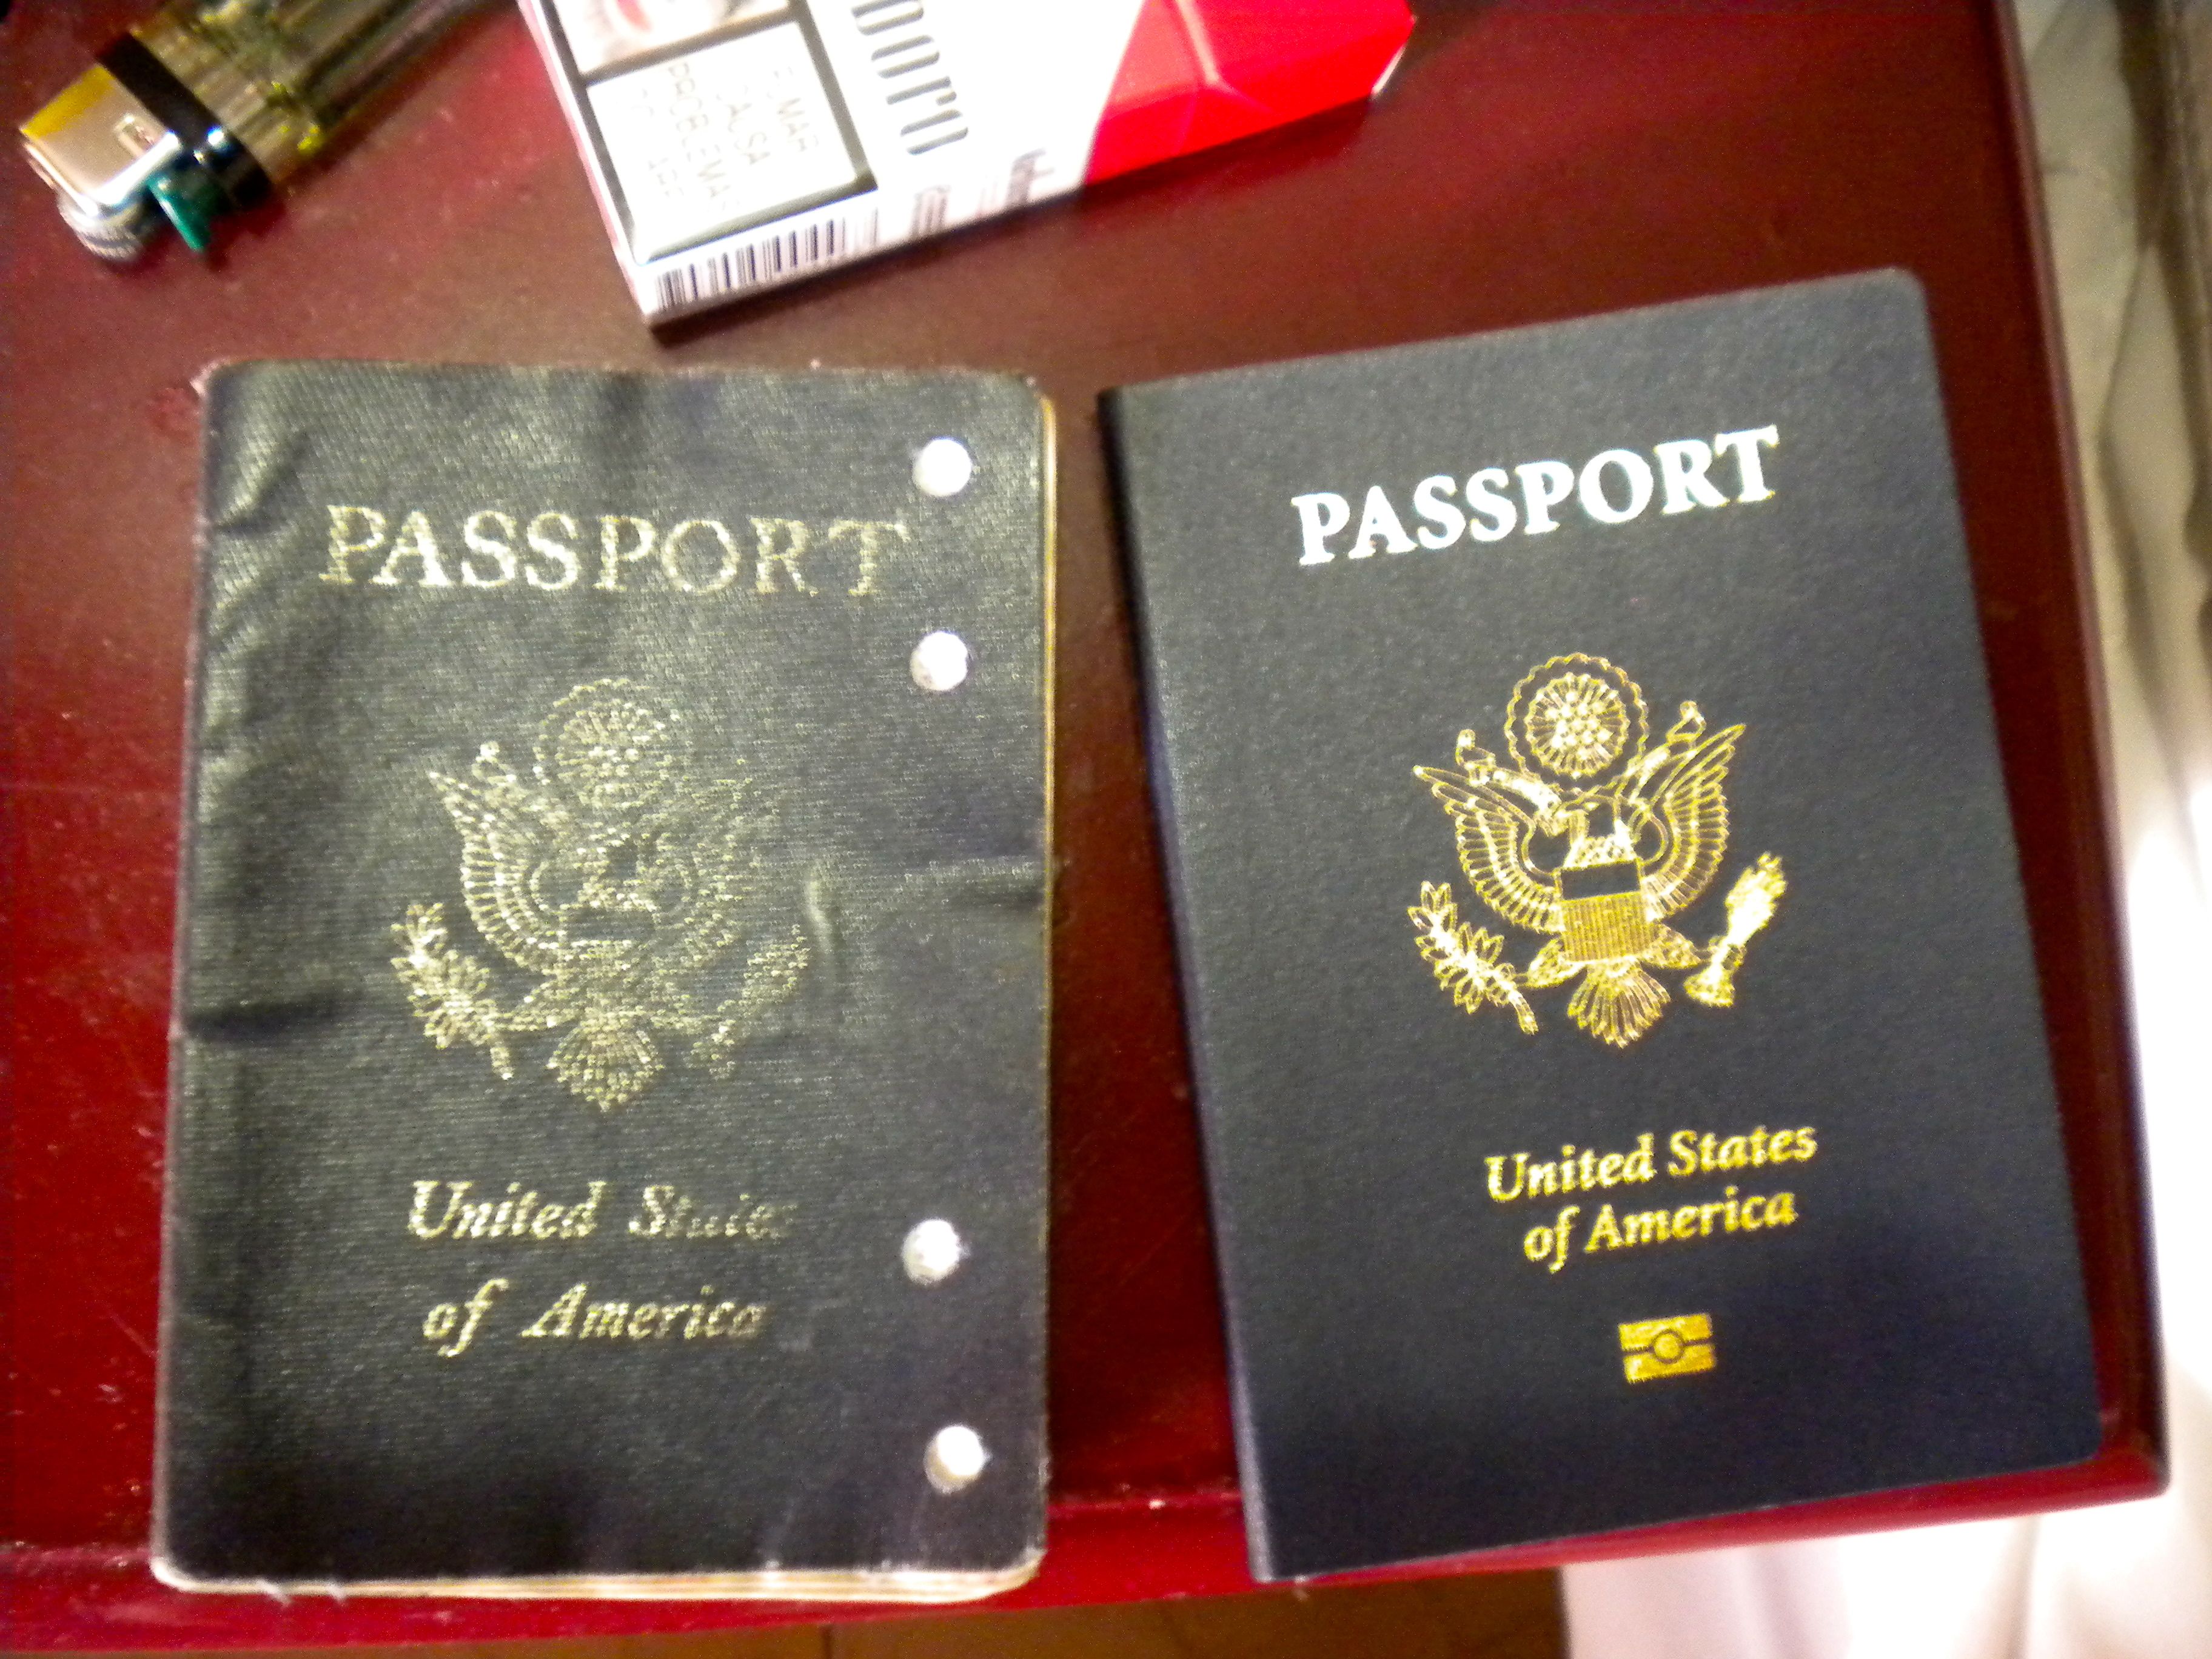 renew us passport